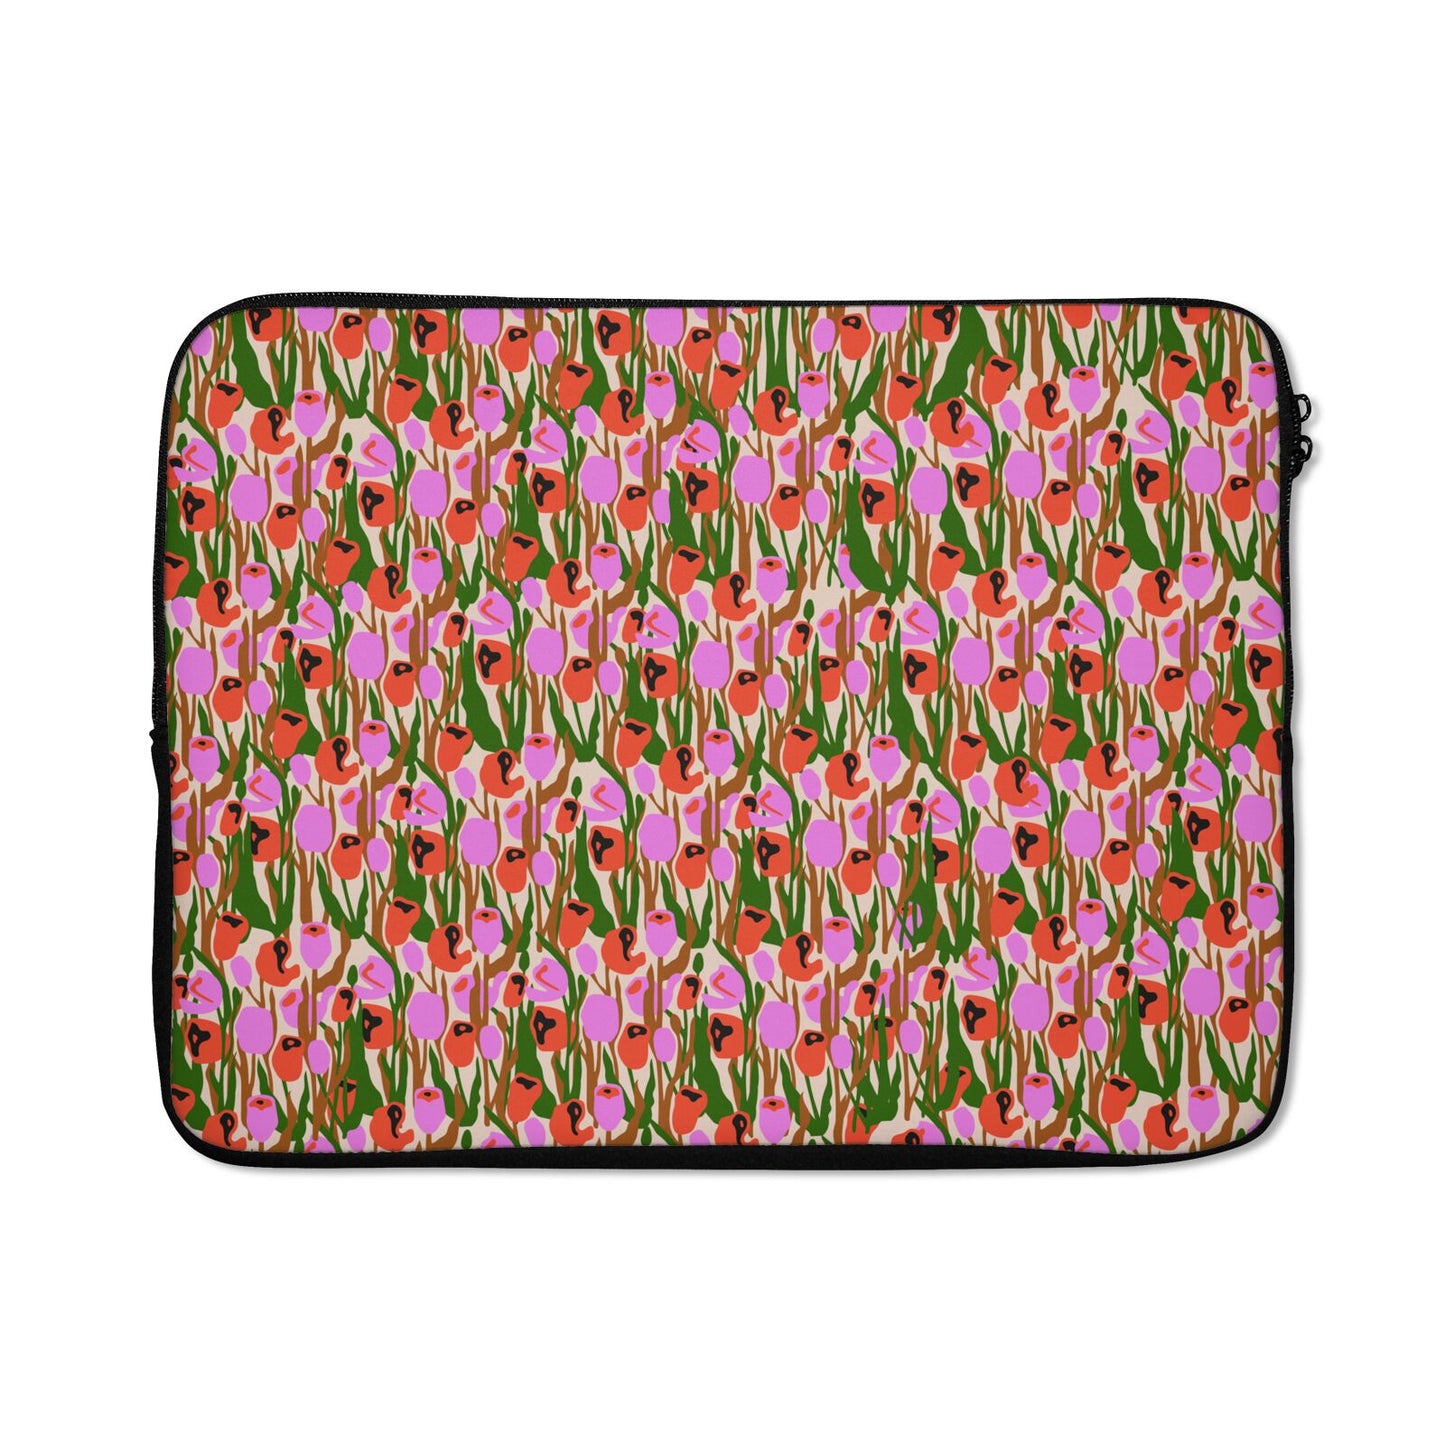 Floral Snake Laptop Bag – Dyefor